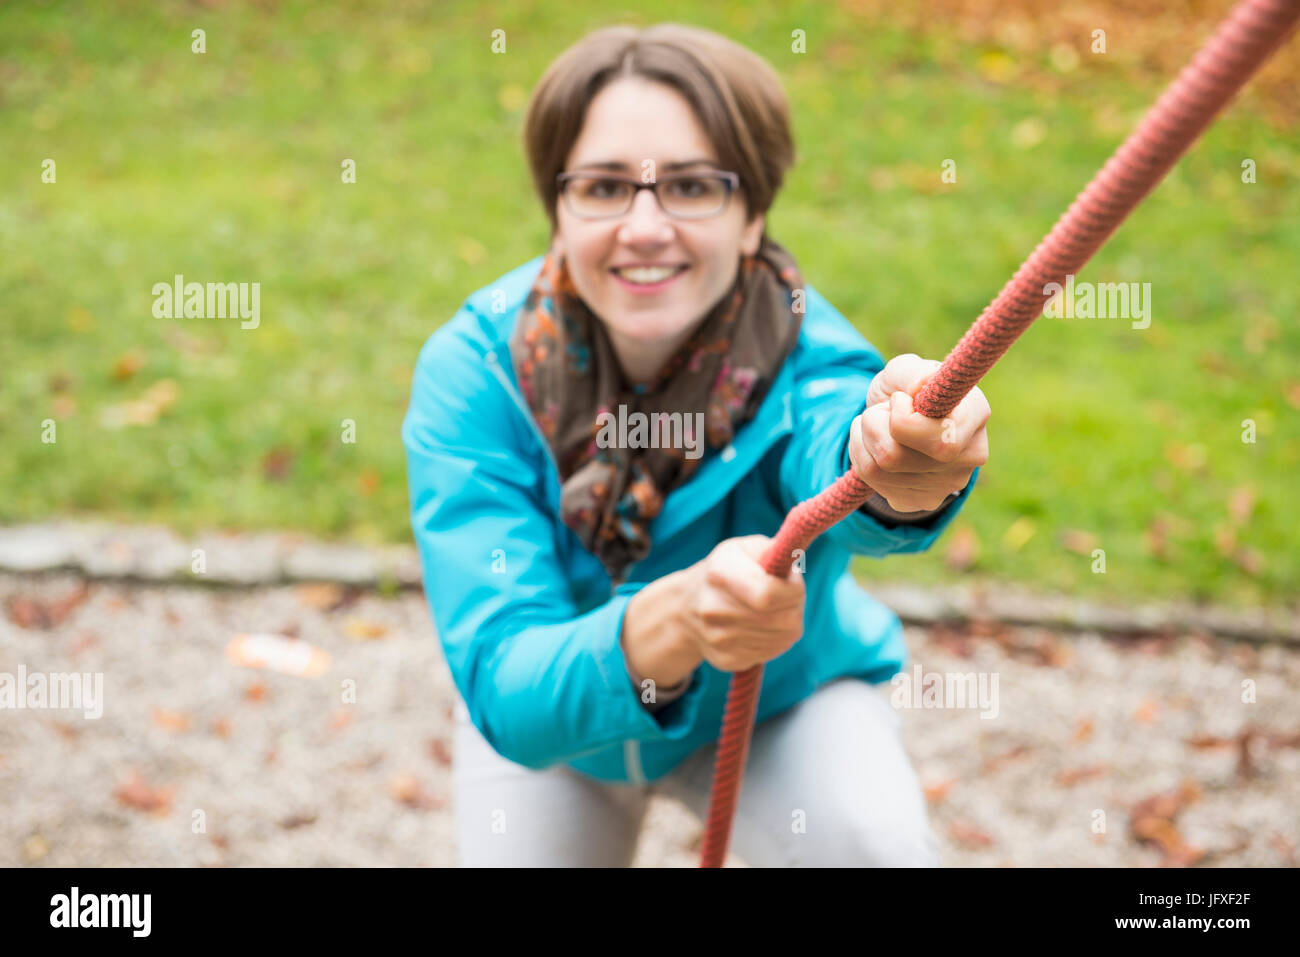 Frau zog sich nach oben an einem Seil von Spielgeräten in eine Herbstlandschaft Stockfoto